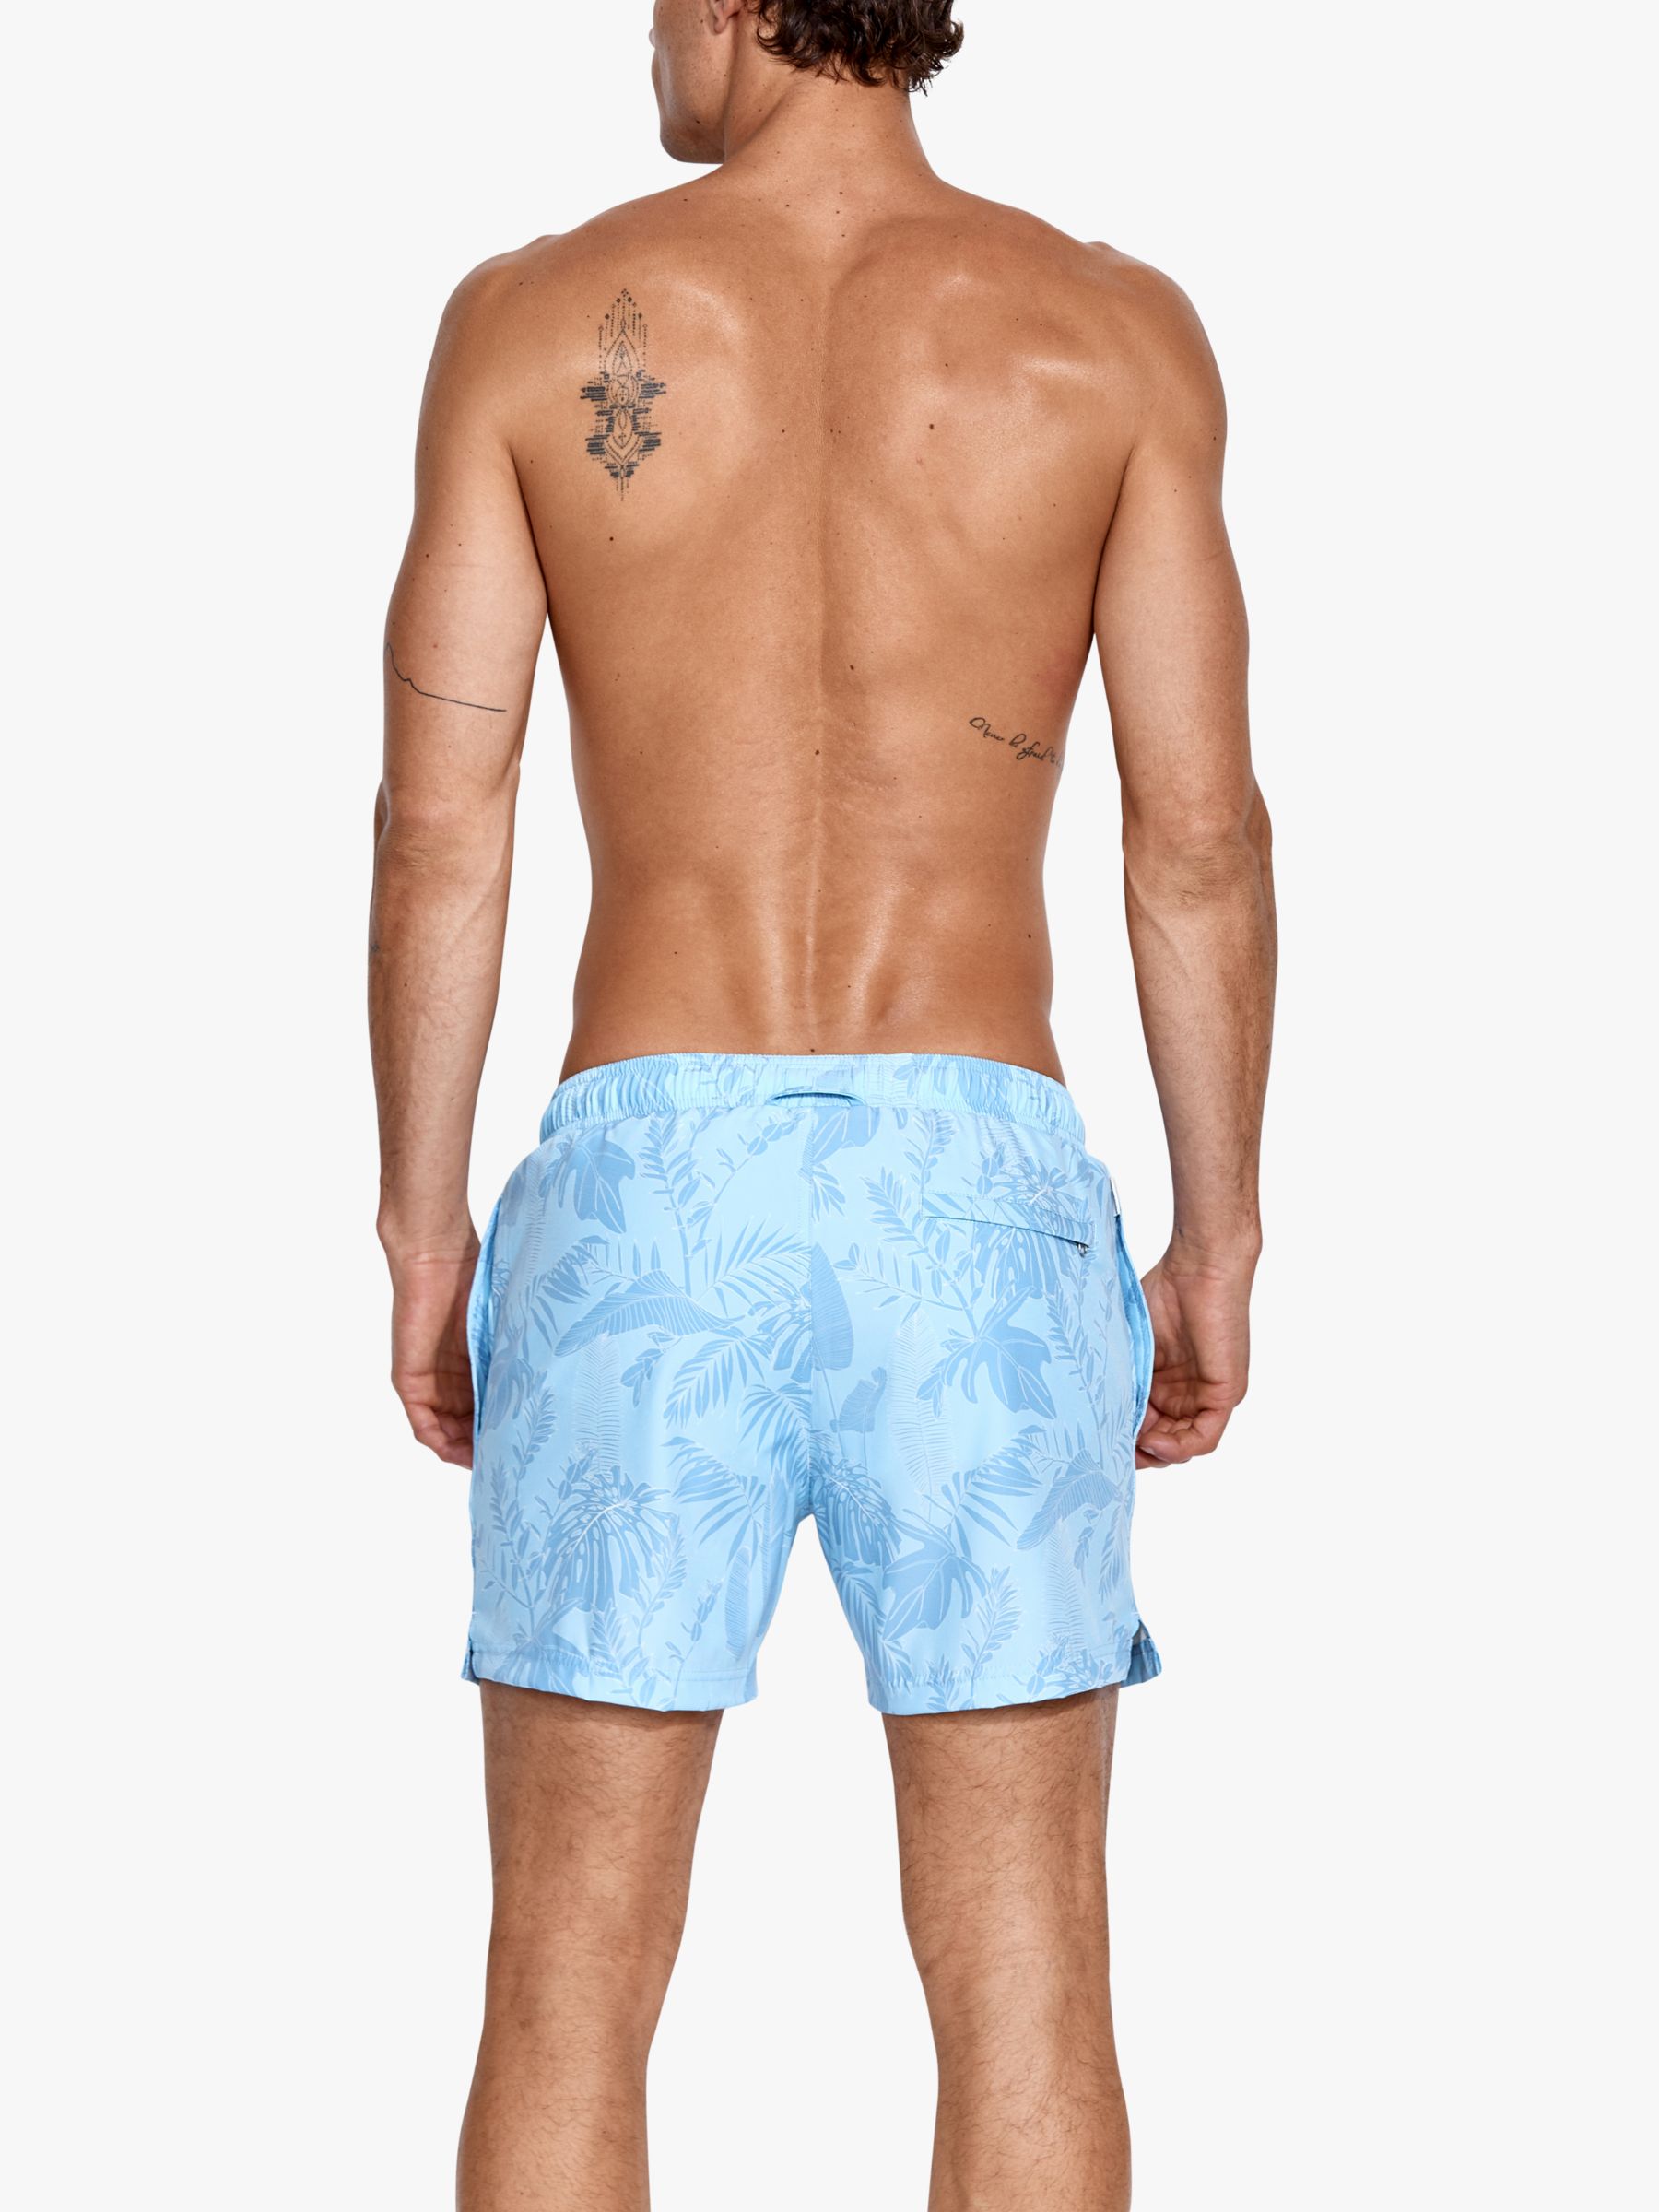 Panos Emporio Classic Leaf Print Swim Shorts, Blue, S